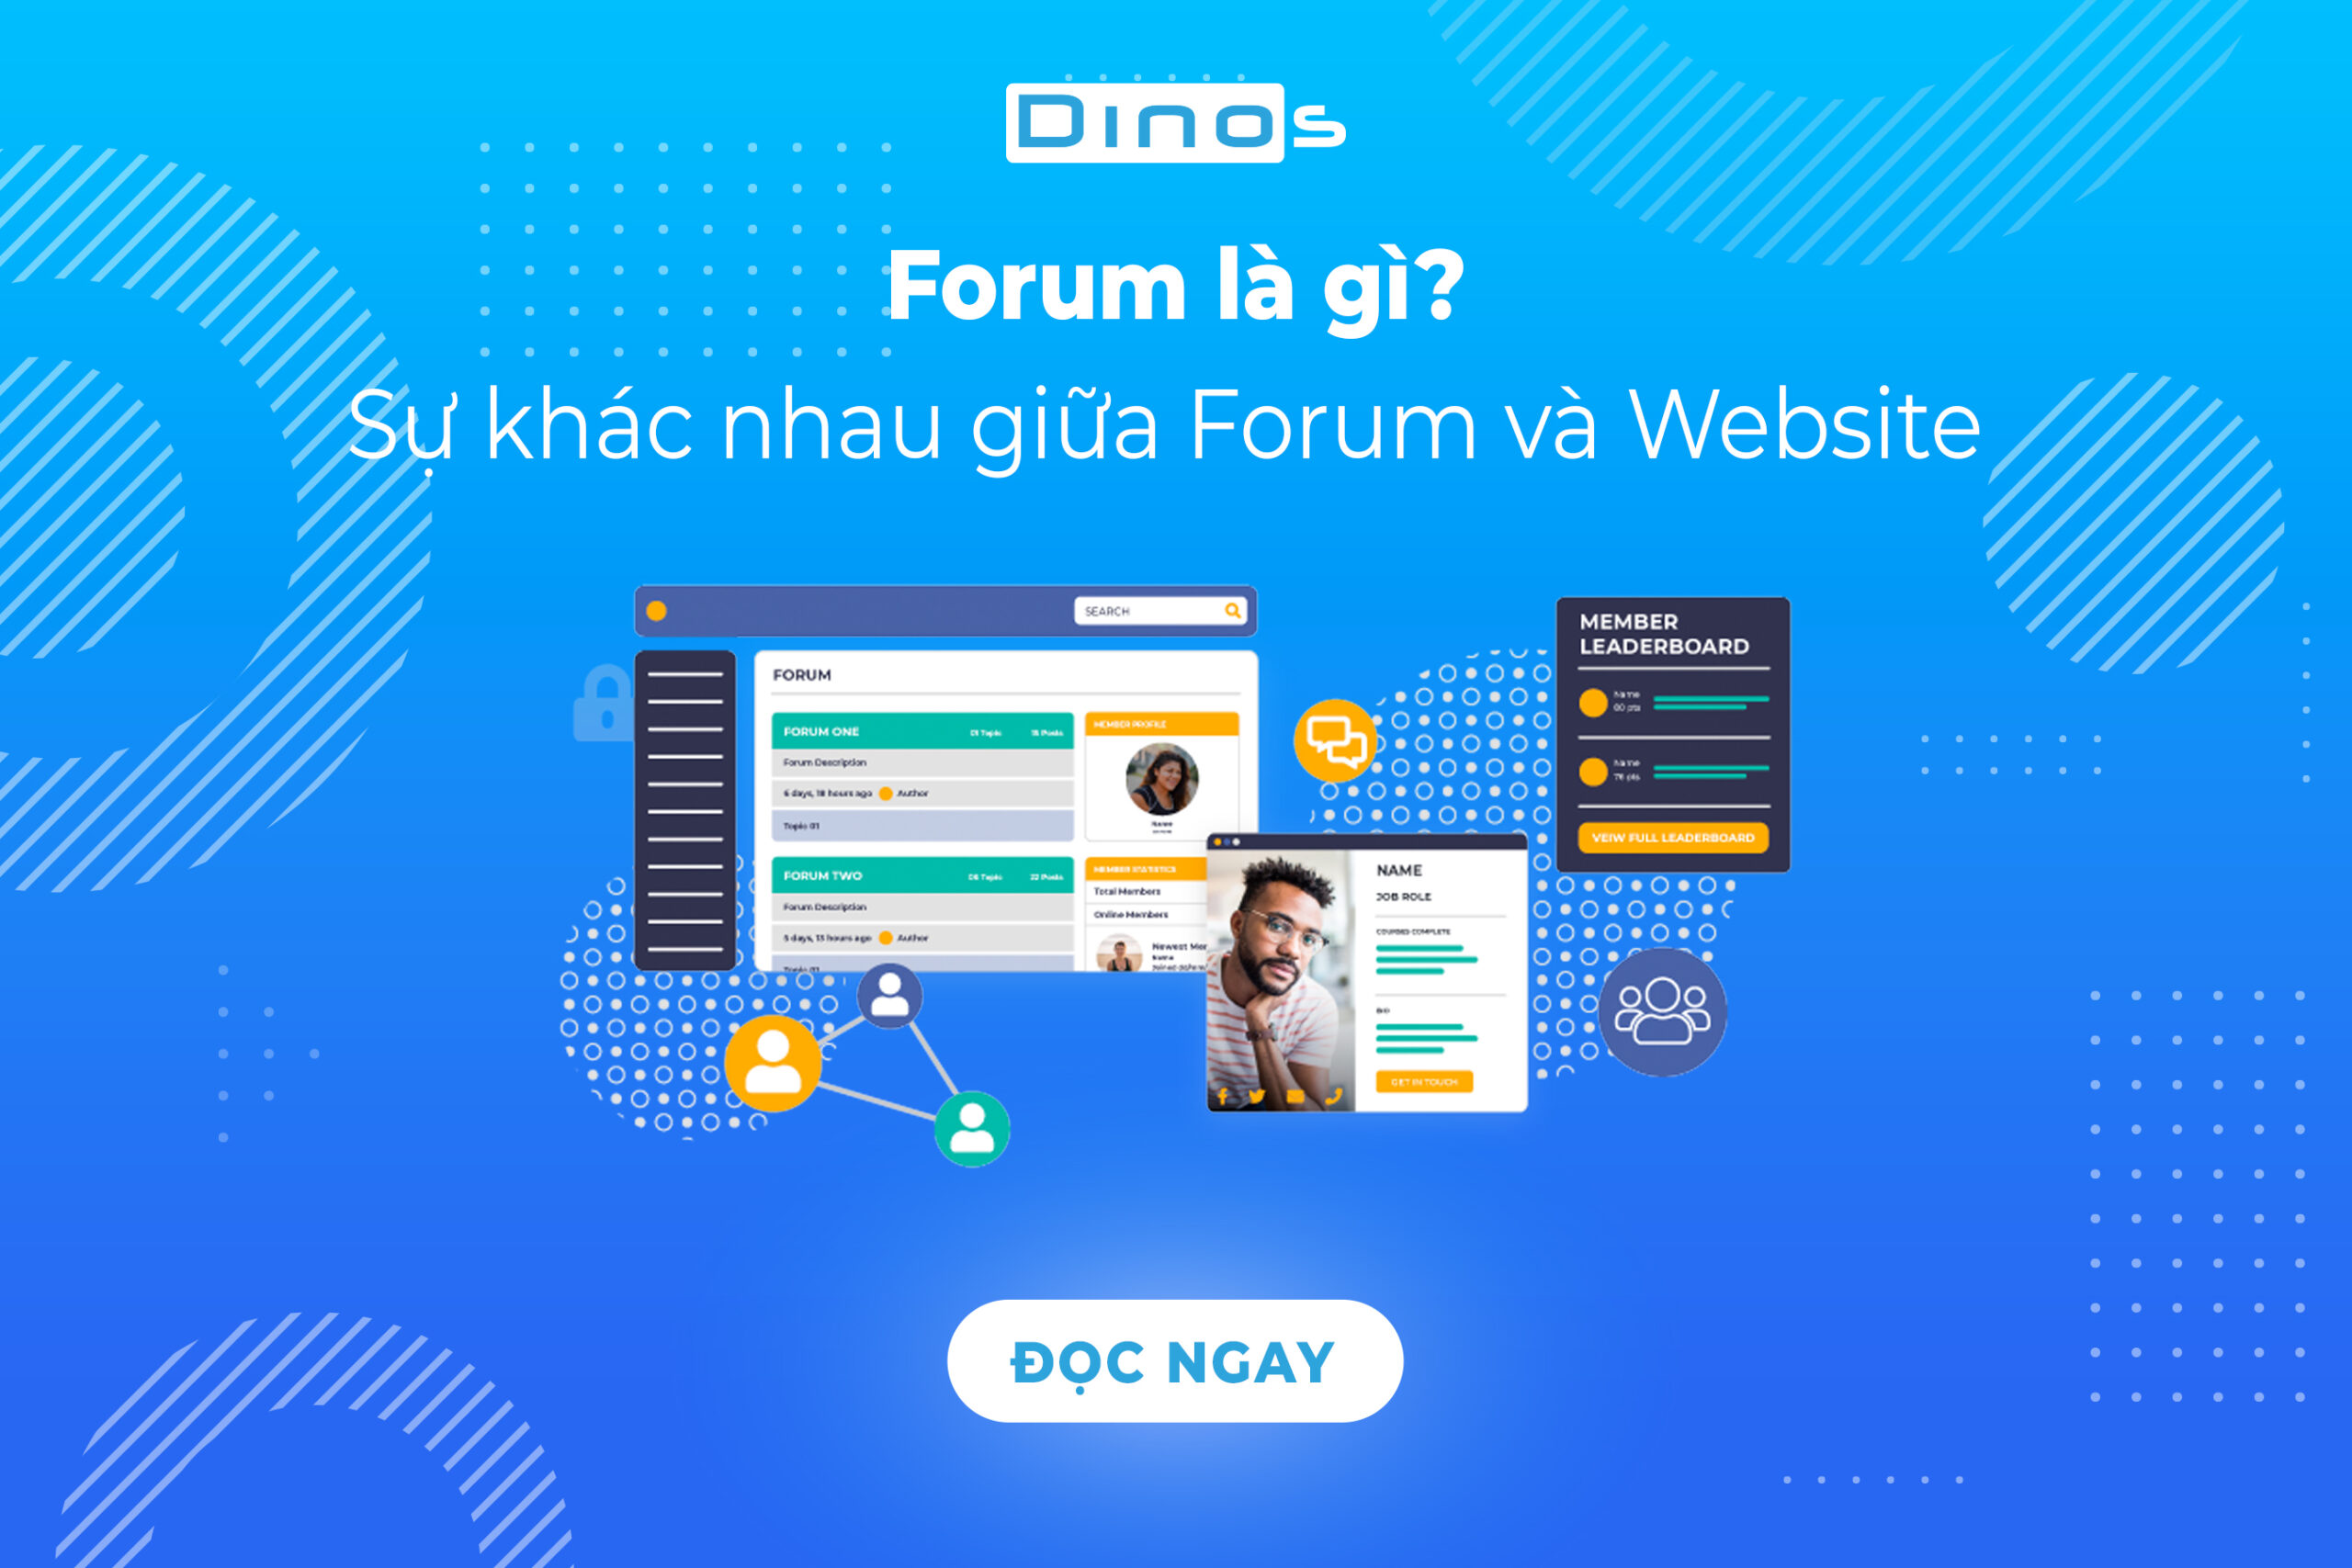 Forum là gì? Phân biệt sự khác nhau giữa Forum và Website